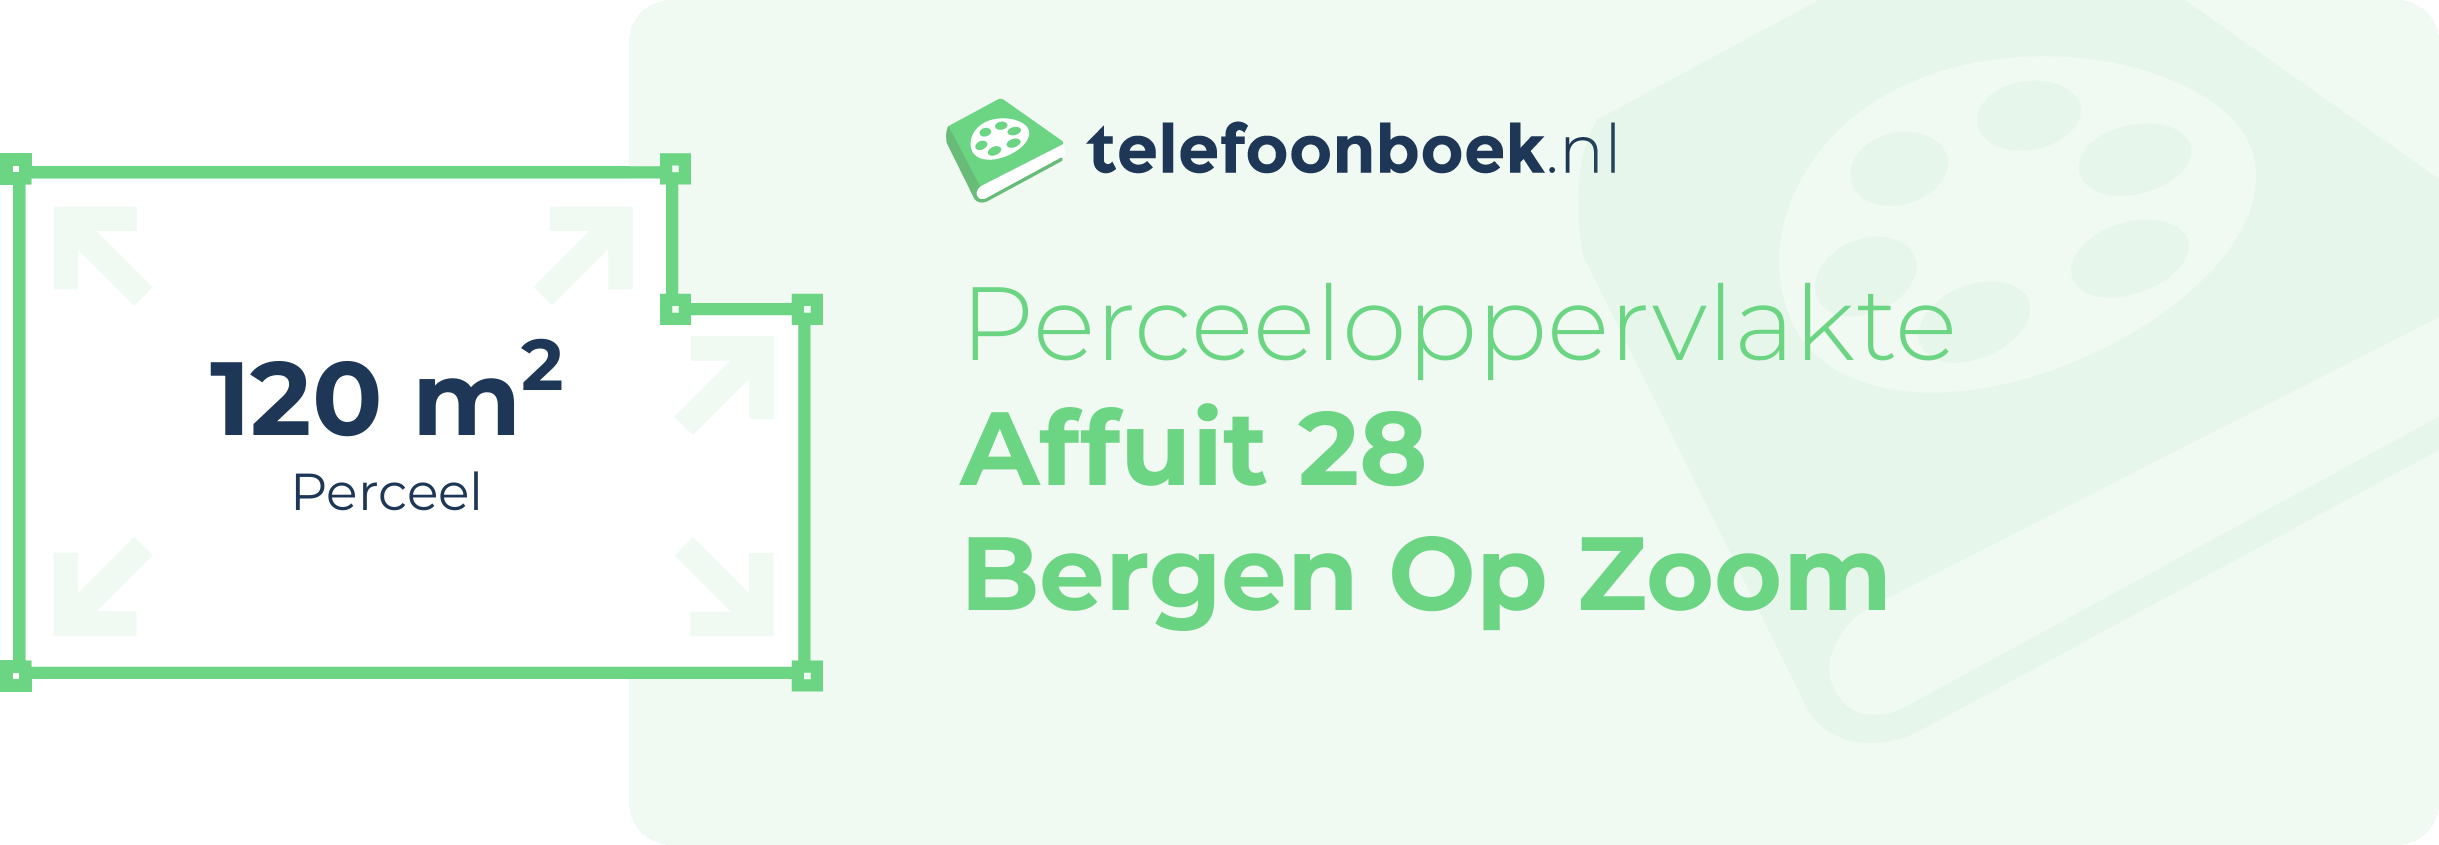 Perceeloppervlakte Affuit 28 Bergen Op Zoom